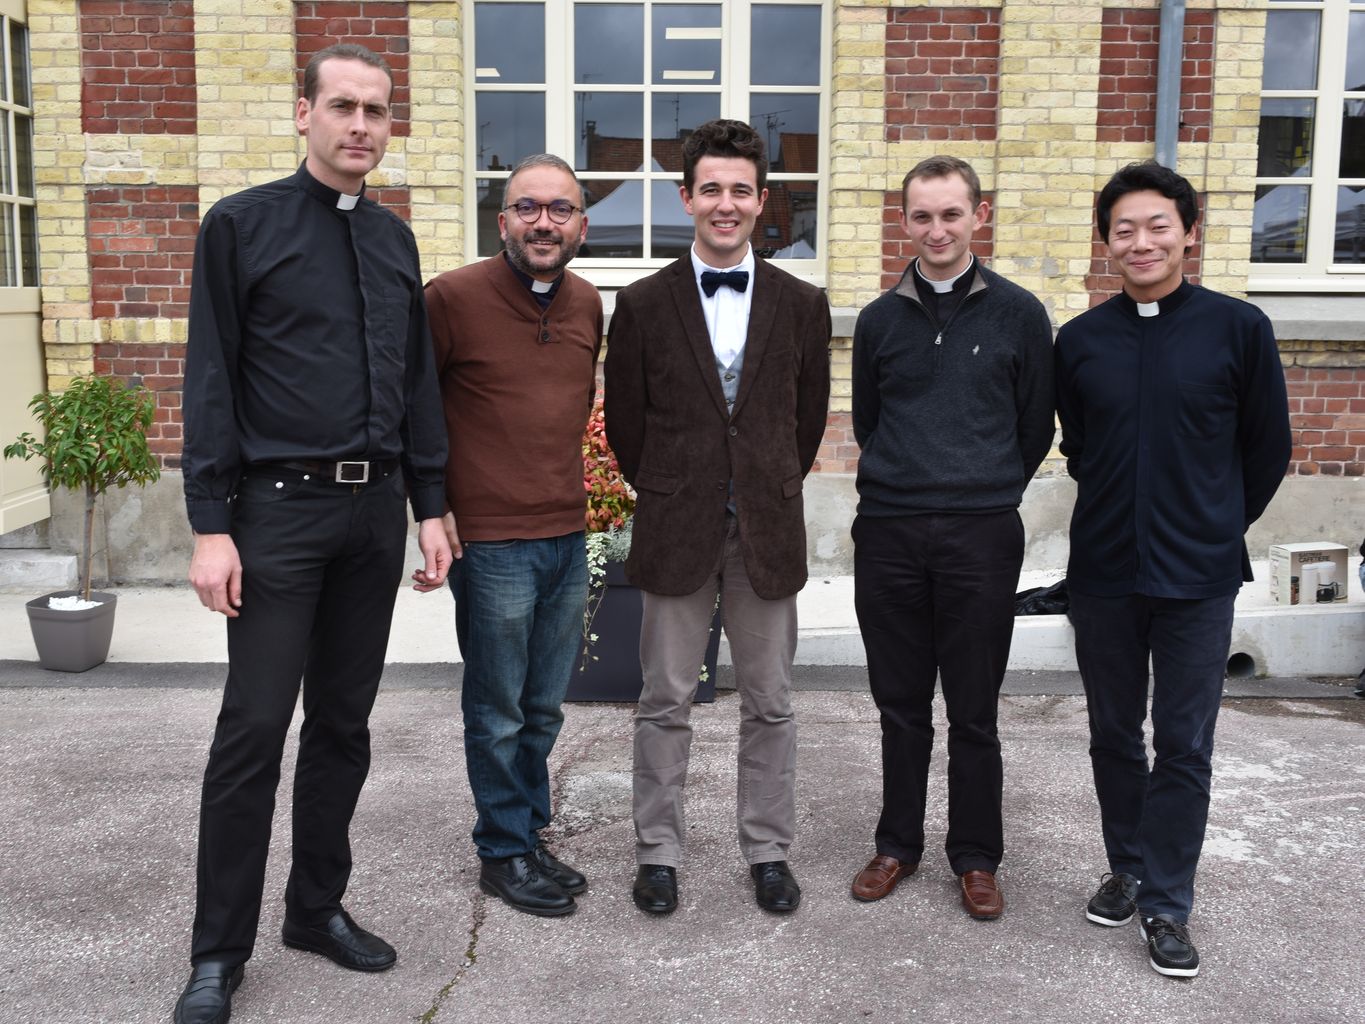 De gauche à droite : Père Pierre Poidevin (curé), Père Bryan Sultana, Anthony Delahaye (Séminariste), Père Louis-Emmanuel Meyer, Père Jean-Baptiste